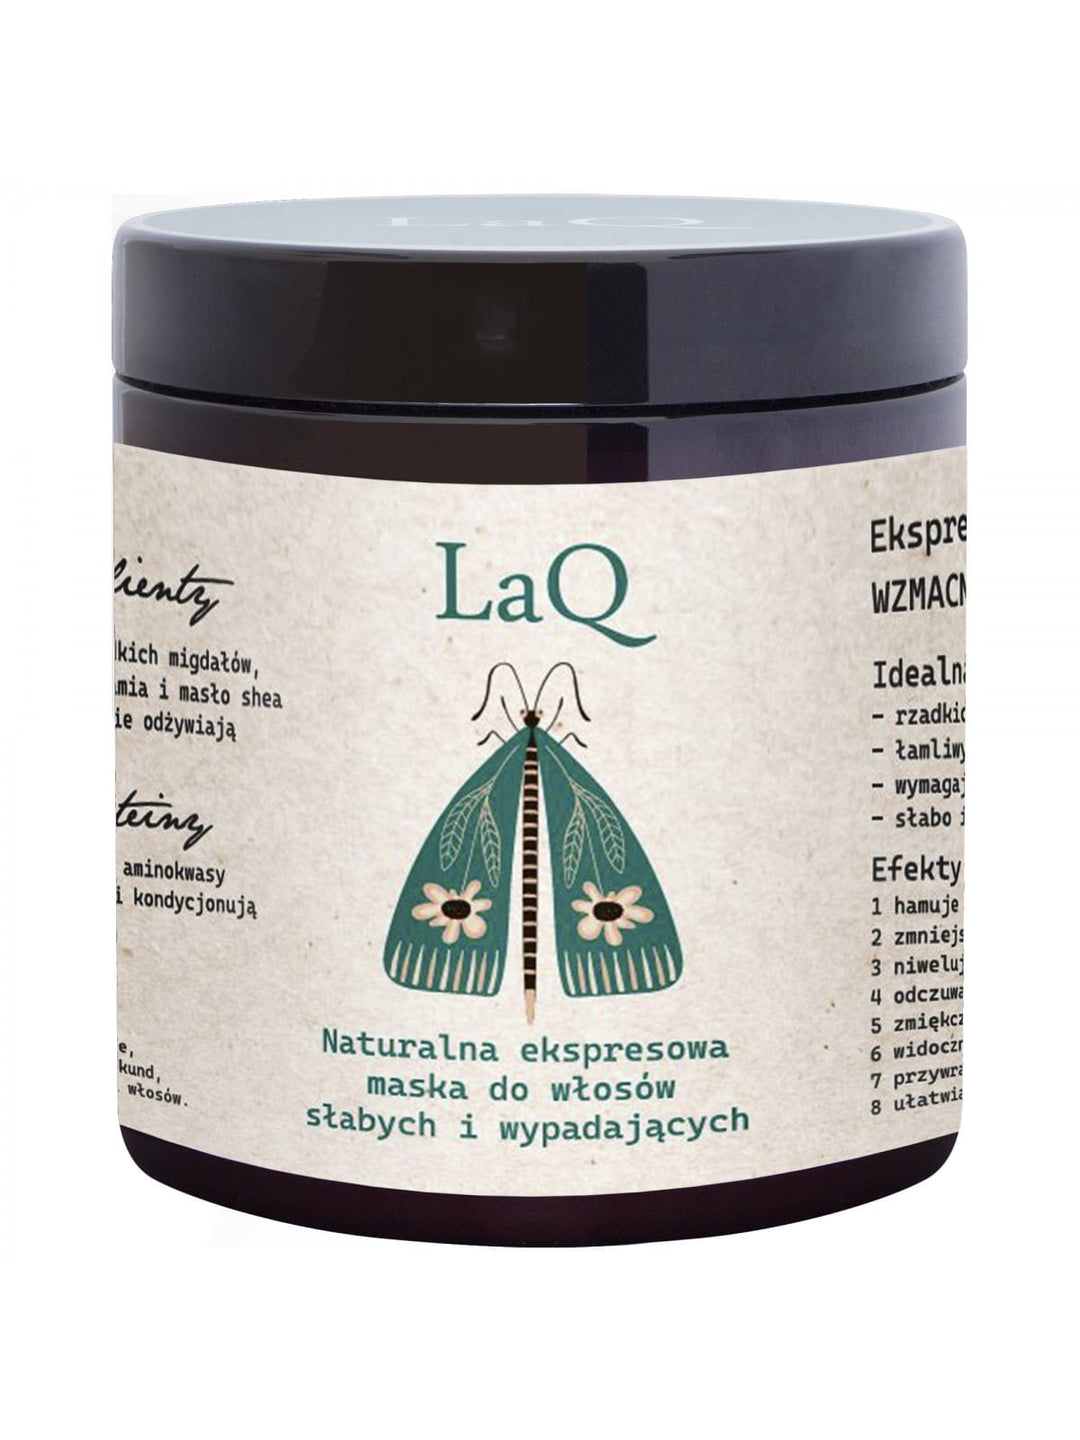 LAQ Naturalna ekspresowa maska do włosów słabych i wypadających 250ml